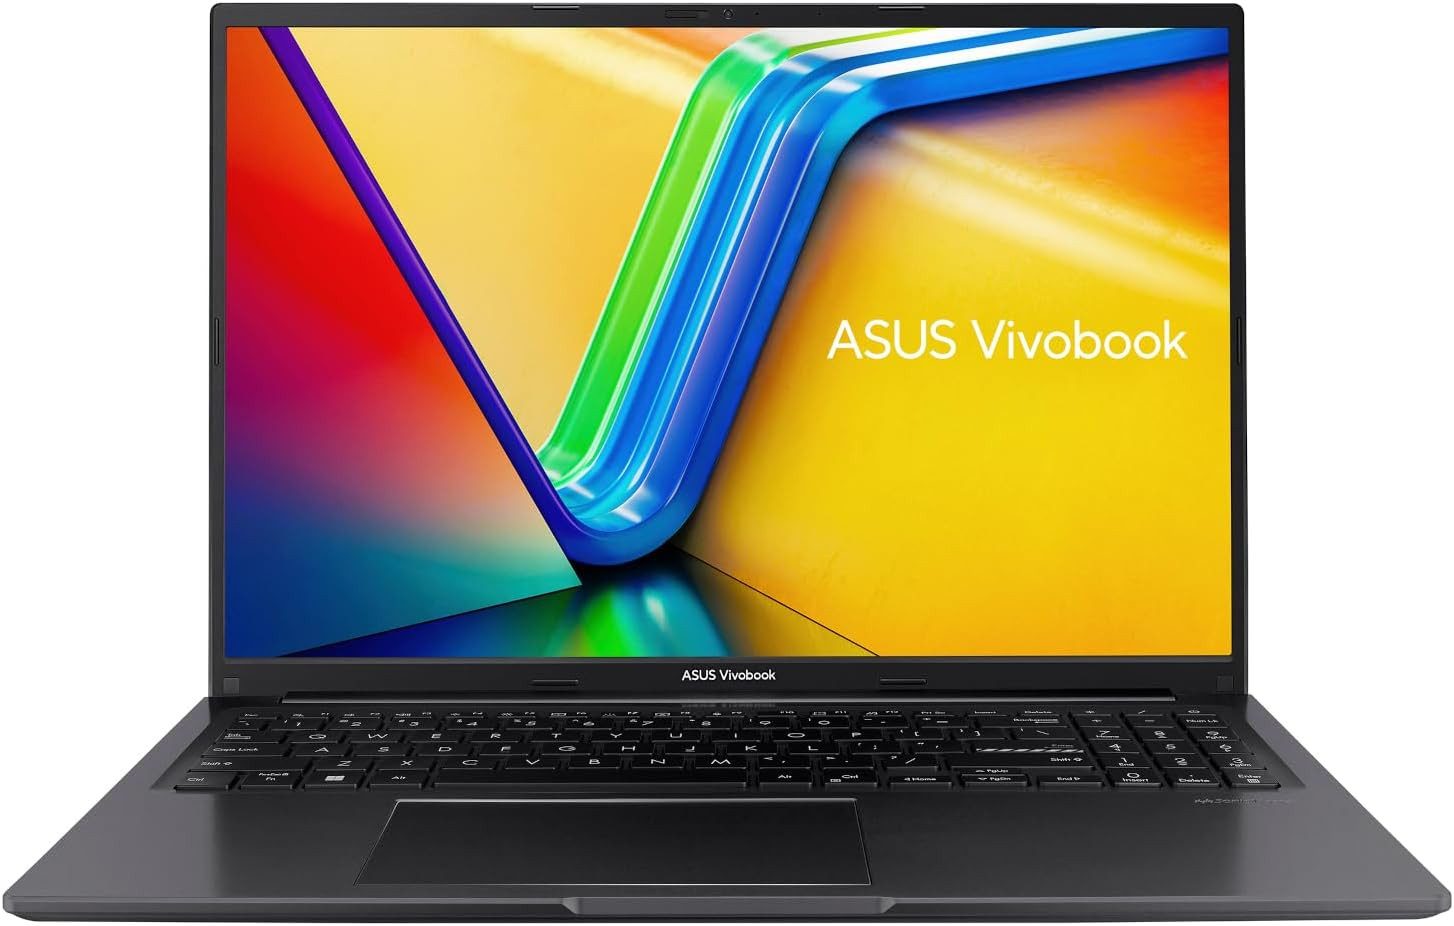 Asus Hochwertiges Display Notebook (AMD 7530U, Radeon RX Vega 7, 500 GB SSD, 16GB RAM,Leistungsstarkes Langer Akkulaufzeit vielseitigen Anschlüssen)